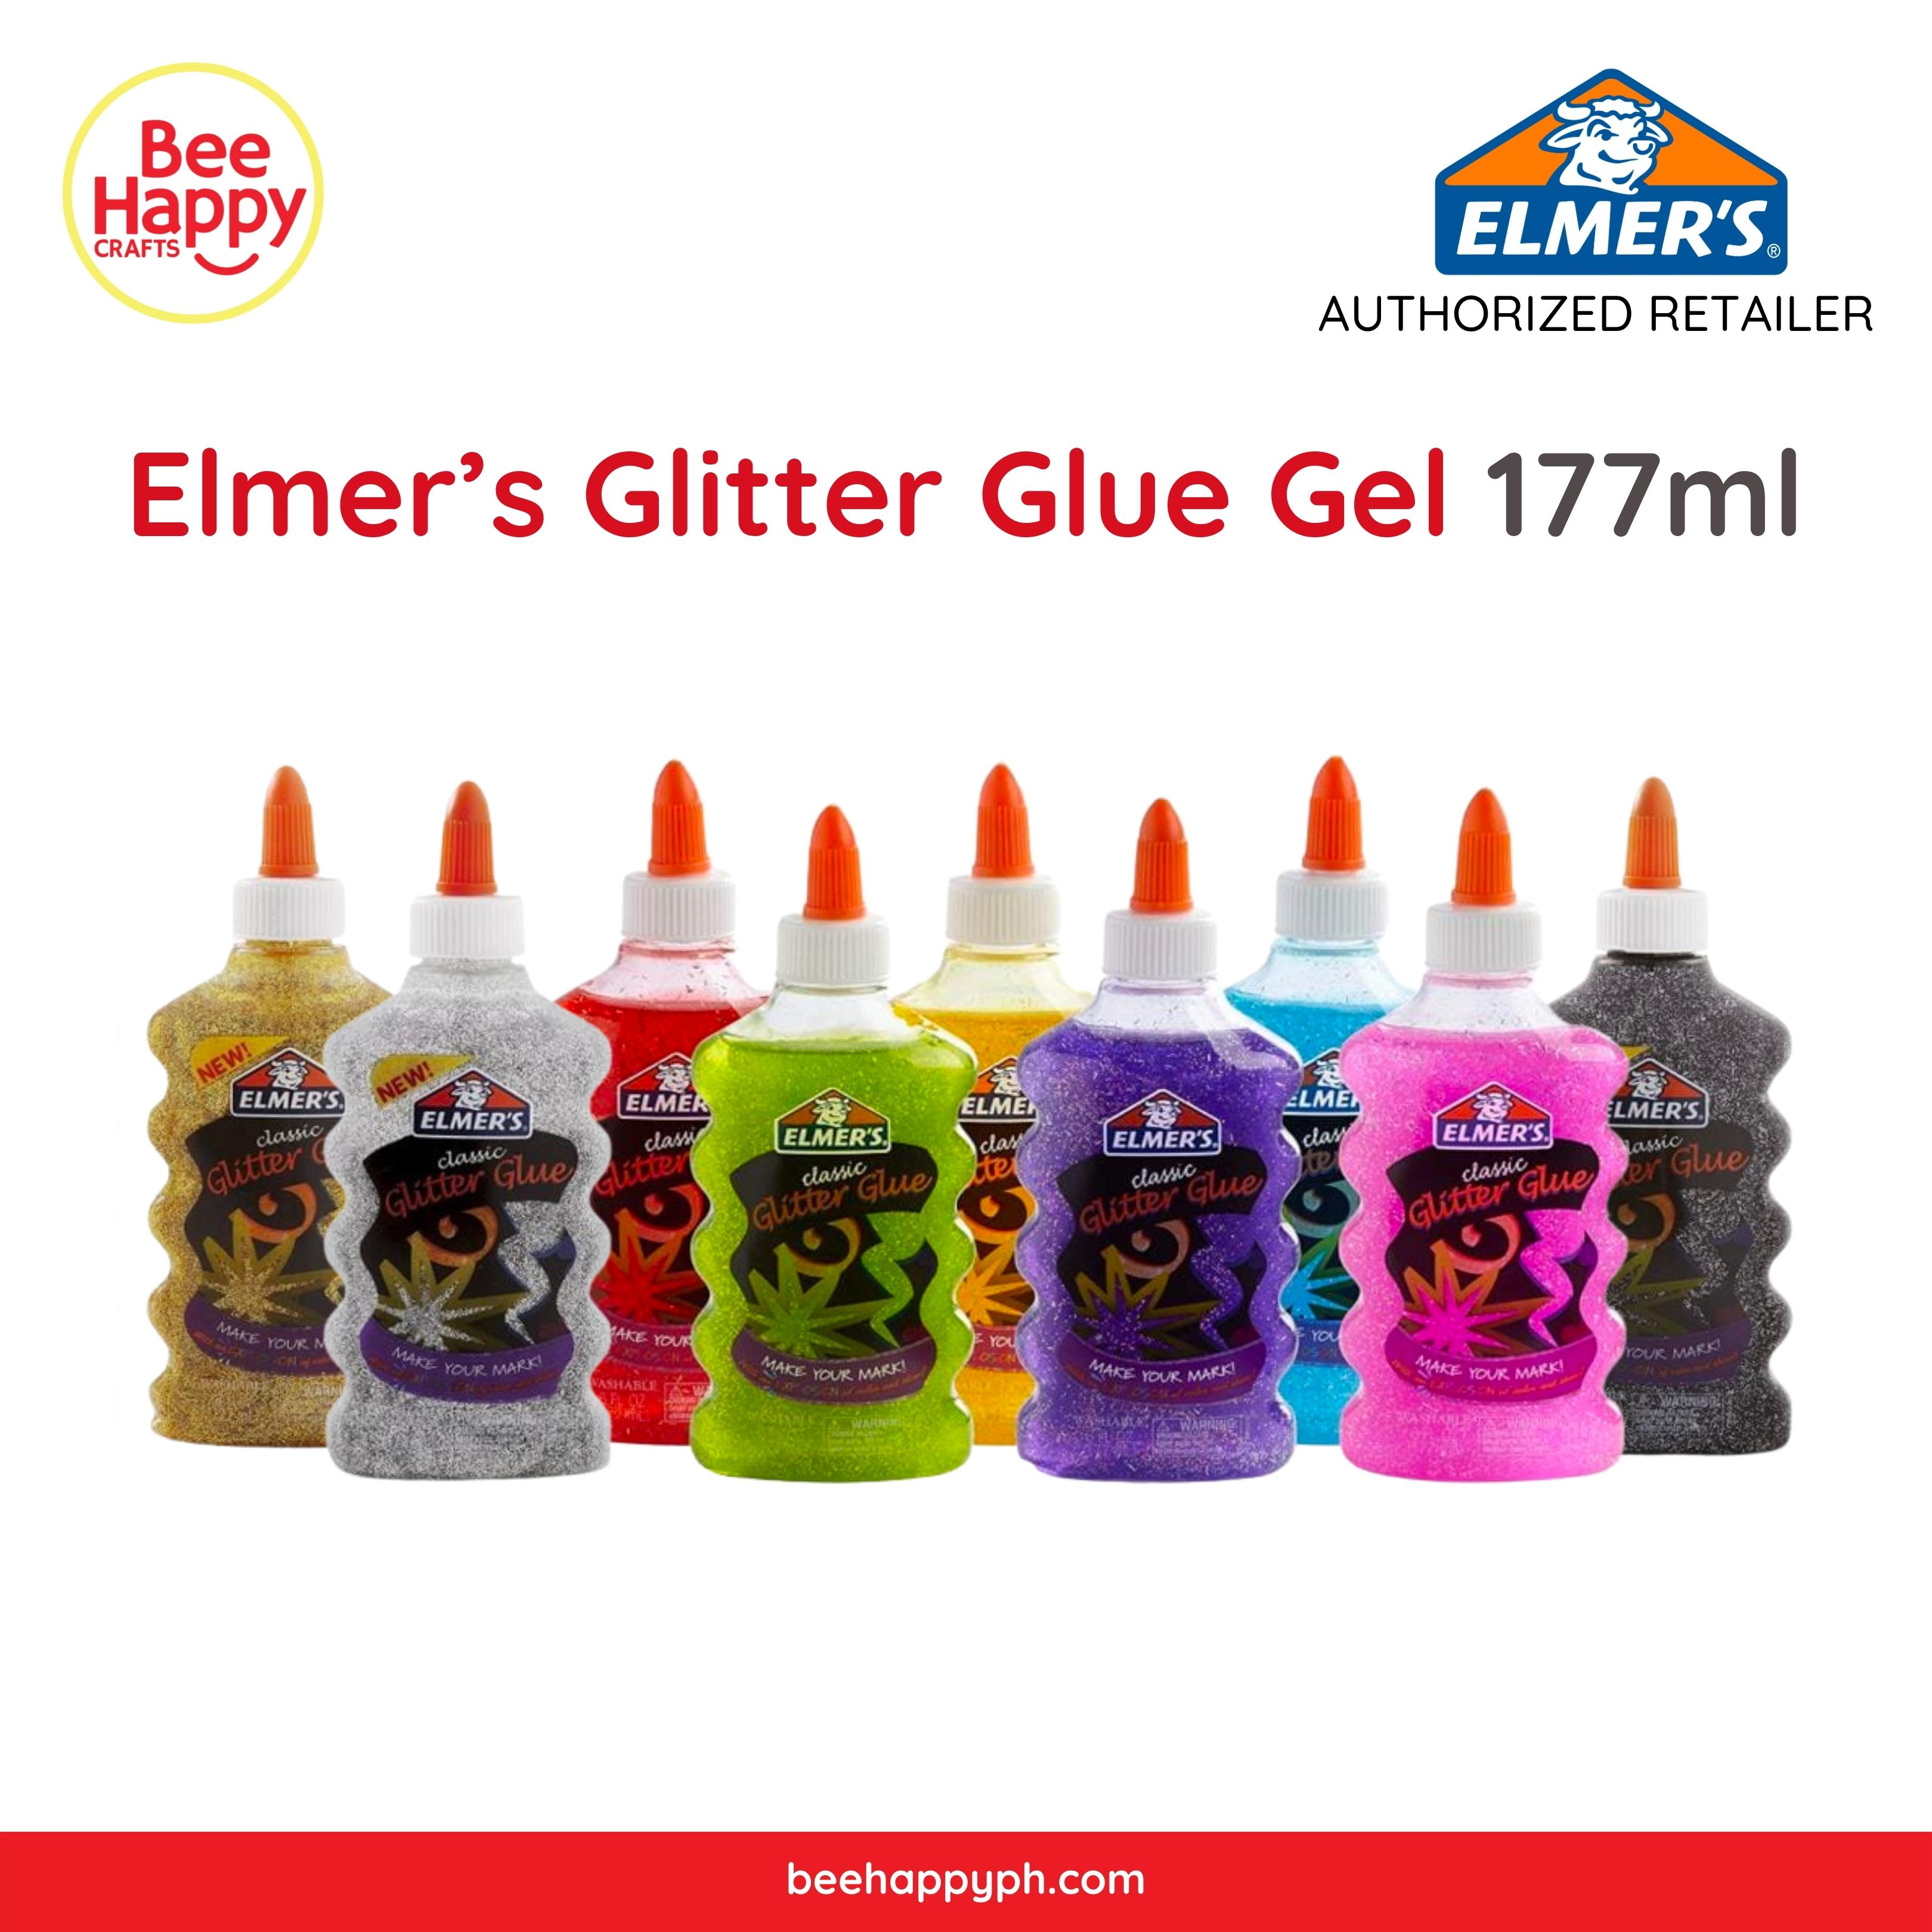 Elmer's Magical Liquid for Making Slime 86ml